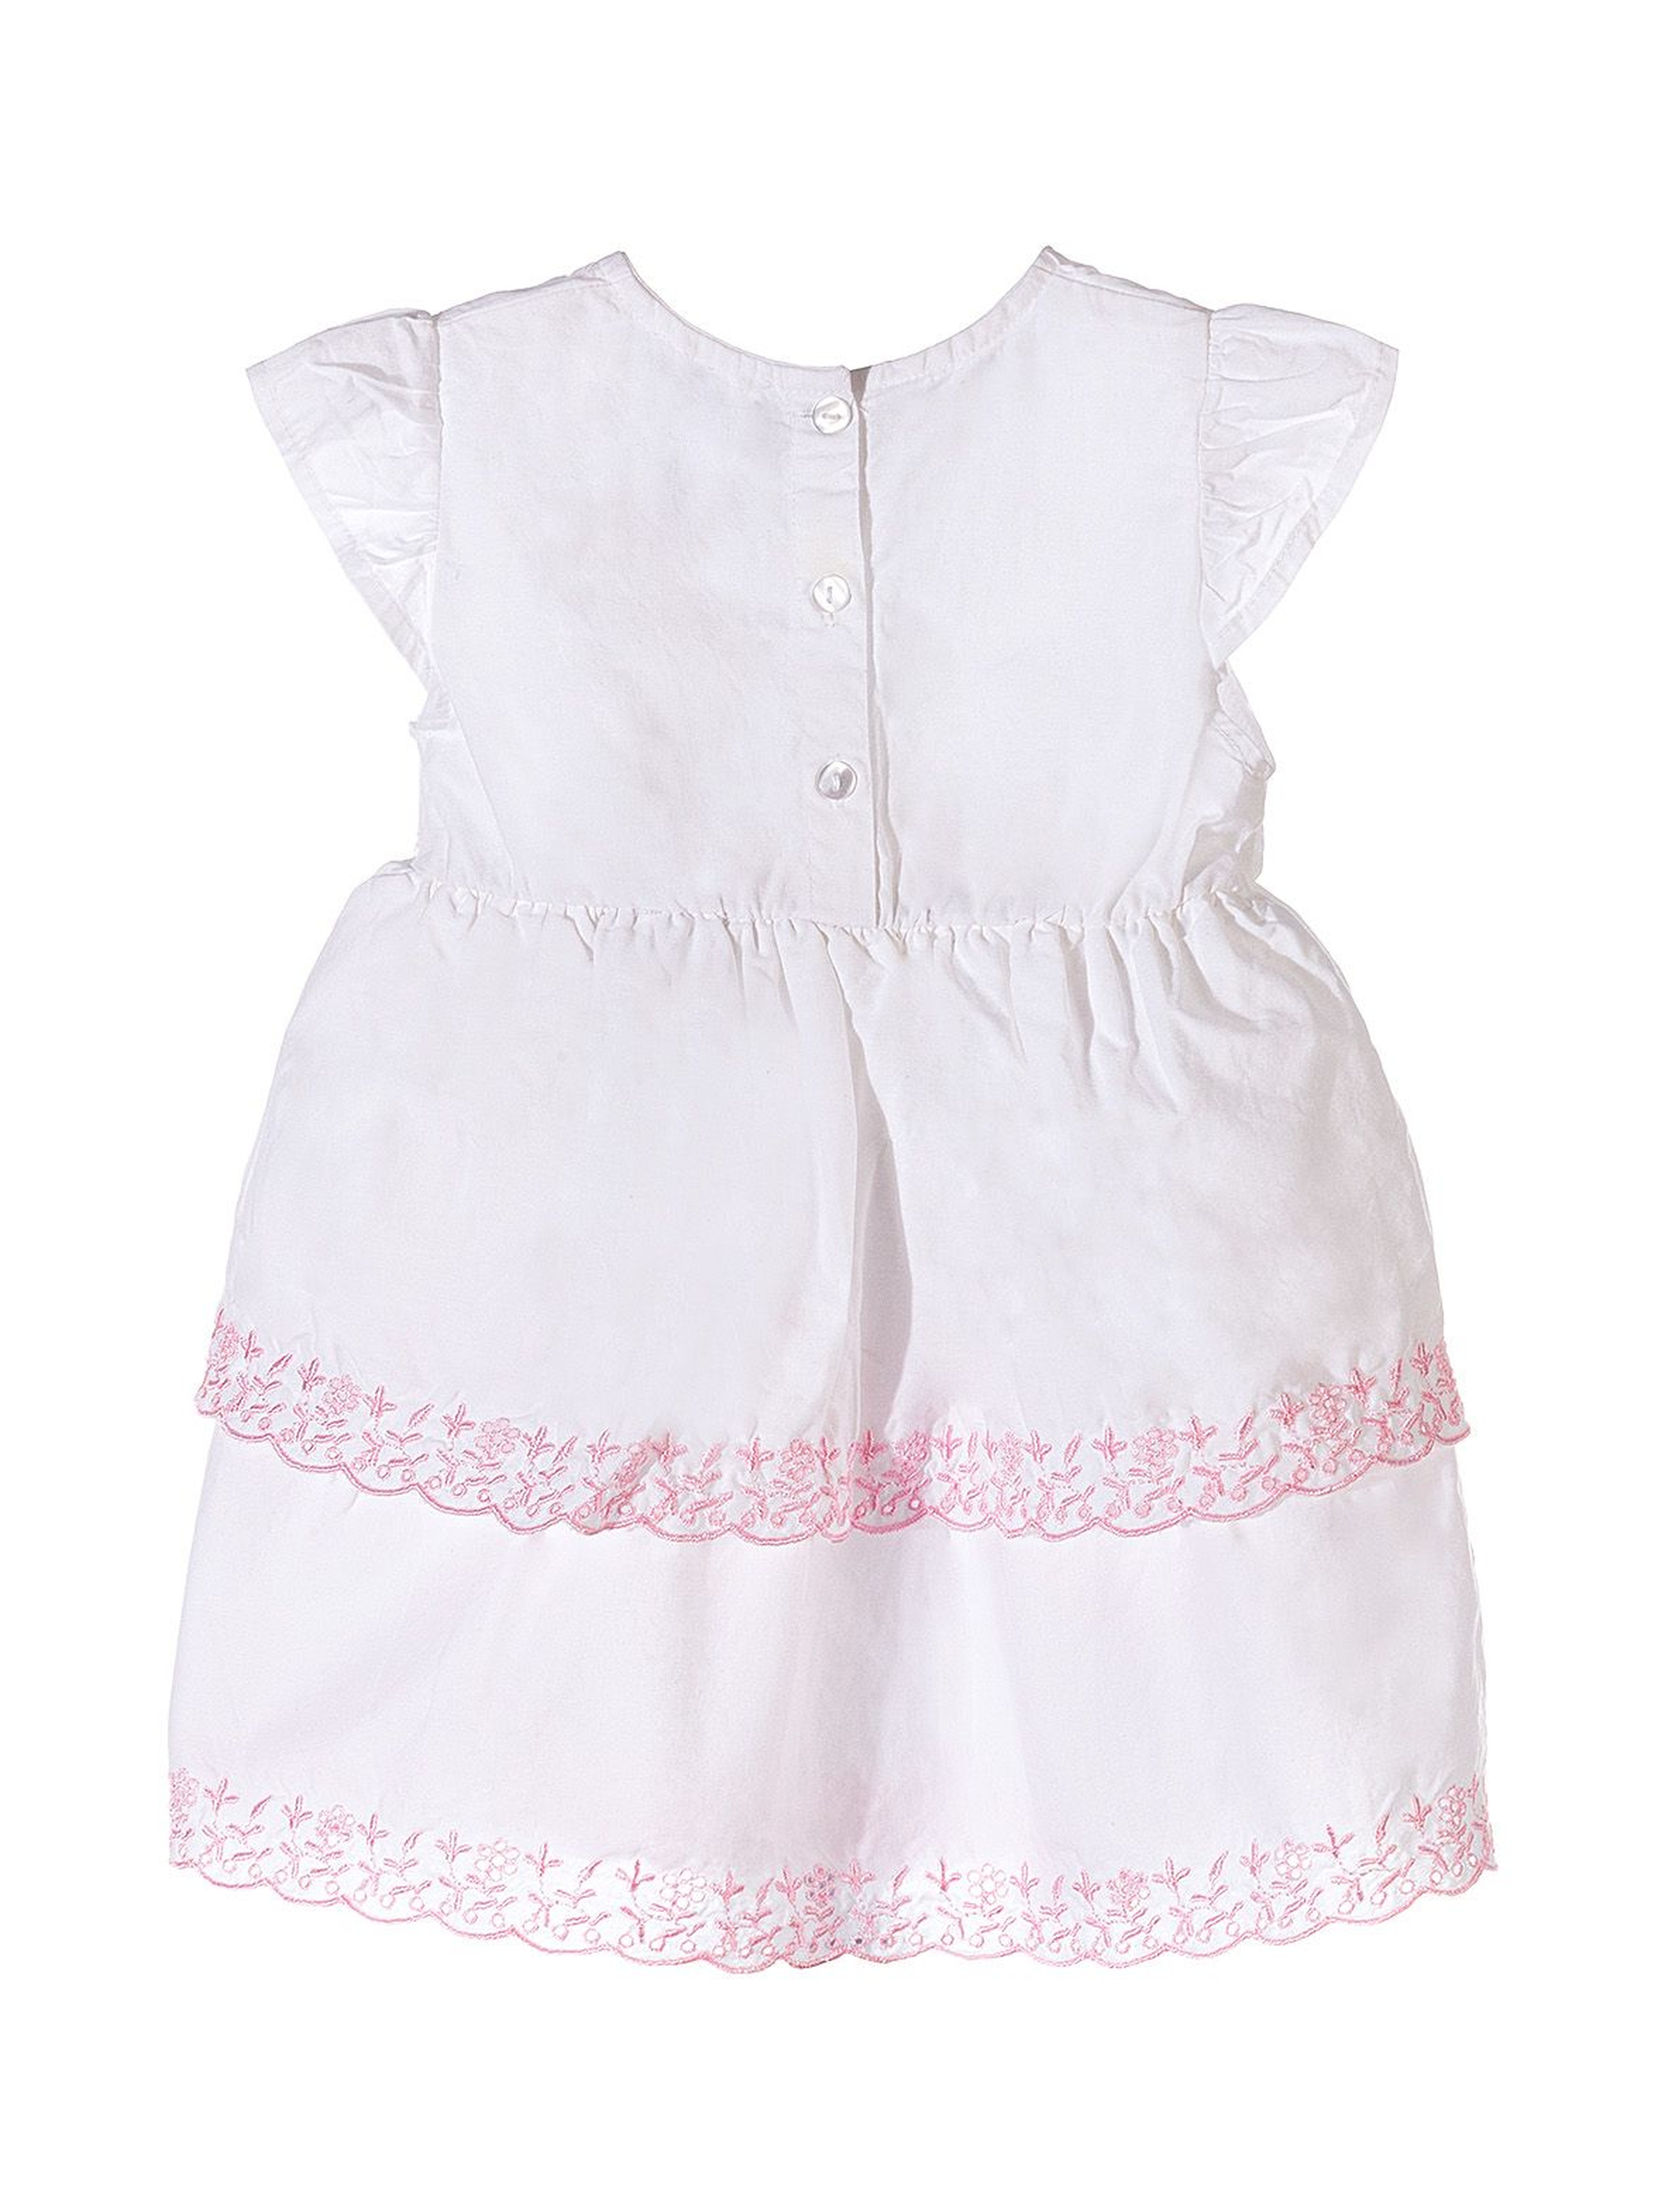 Sukienka biała dla niemowlaka - różowe haftowane kwiatki